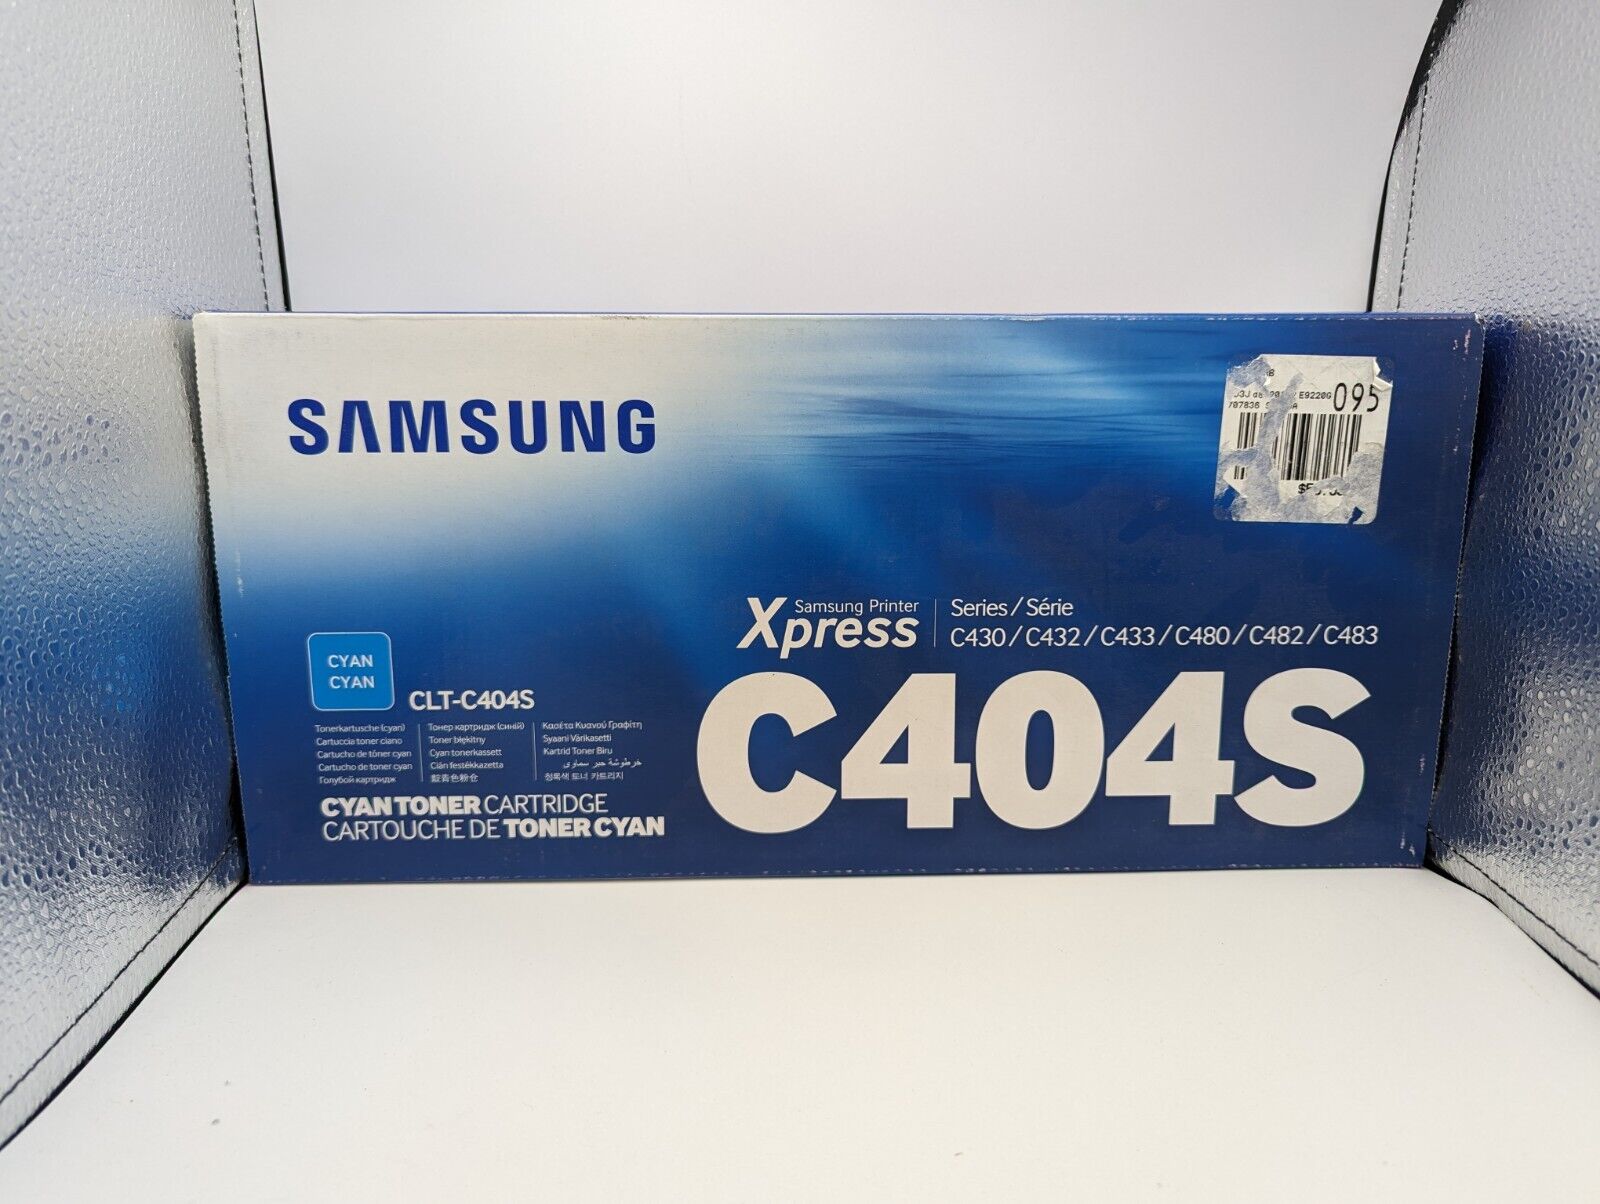 Genuine Samsung CLT-C404S CYAN Toner Cartridge - New In Package